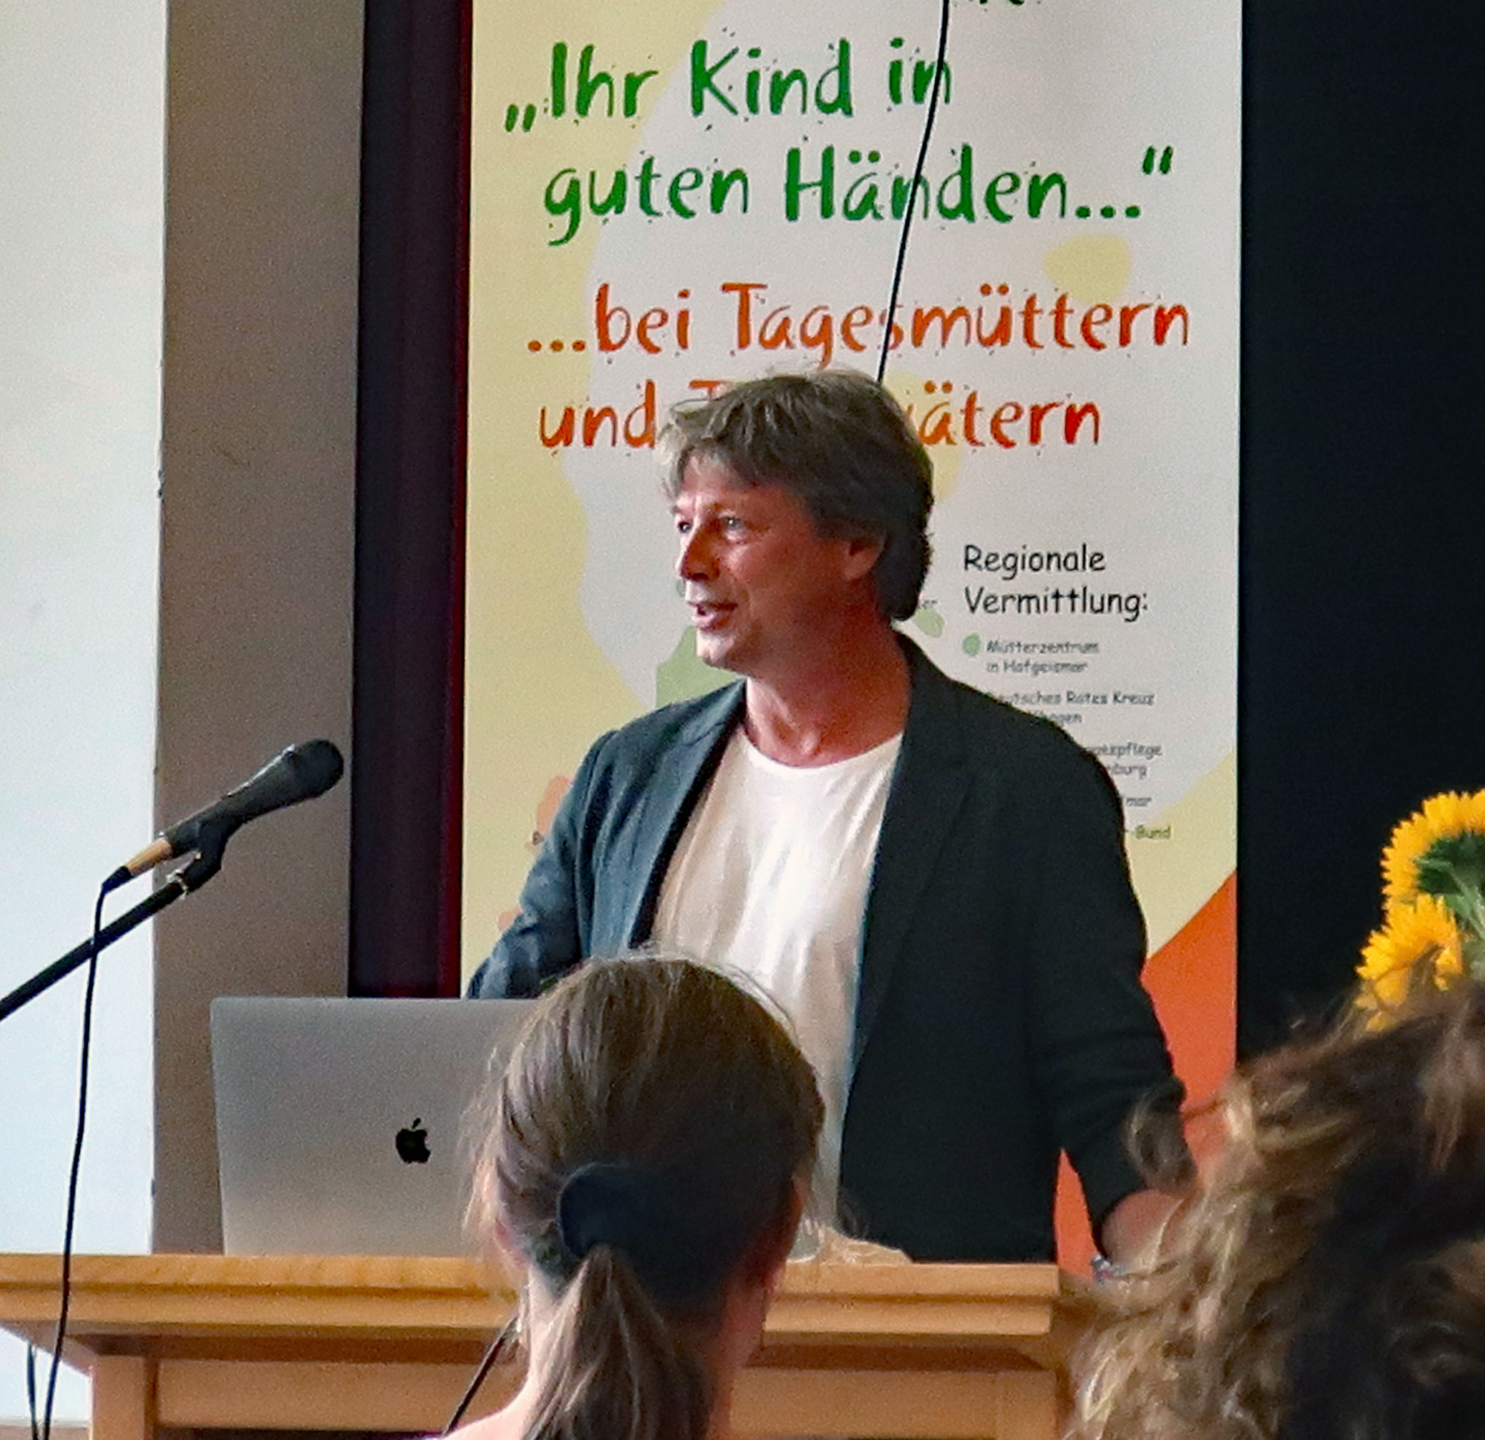 Der bundesweit bekannte Pädagoge und Familientherapeut Markus Bach sprach vor Tagesmüttern aus dem Landkreis Kassel über den Umgang mit stressigen Situationen und erntete viel Applaus.